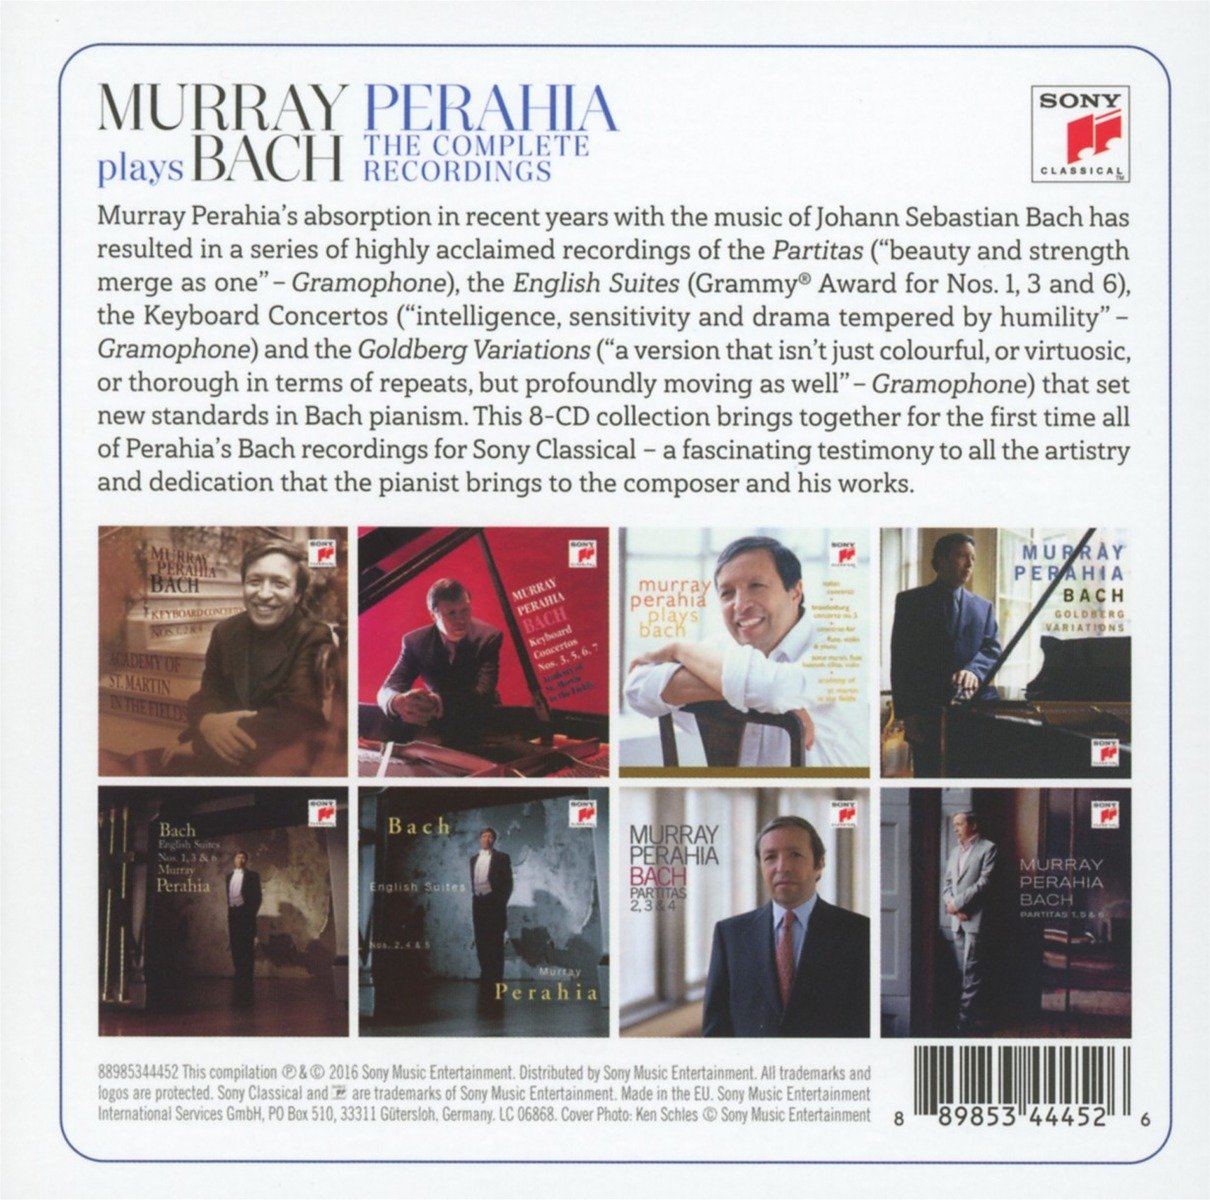 머레이 페라이어가 연주하는 바흐 소니 레코딩 전집 (Murray Perahia Plays Bach - The Complete Sony Recordings)